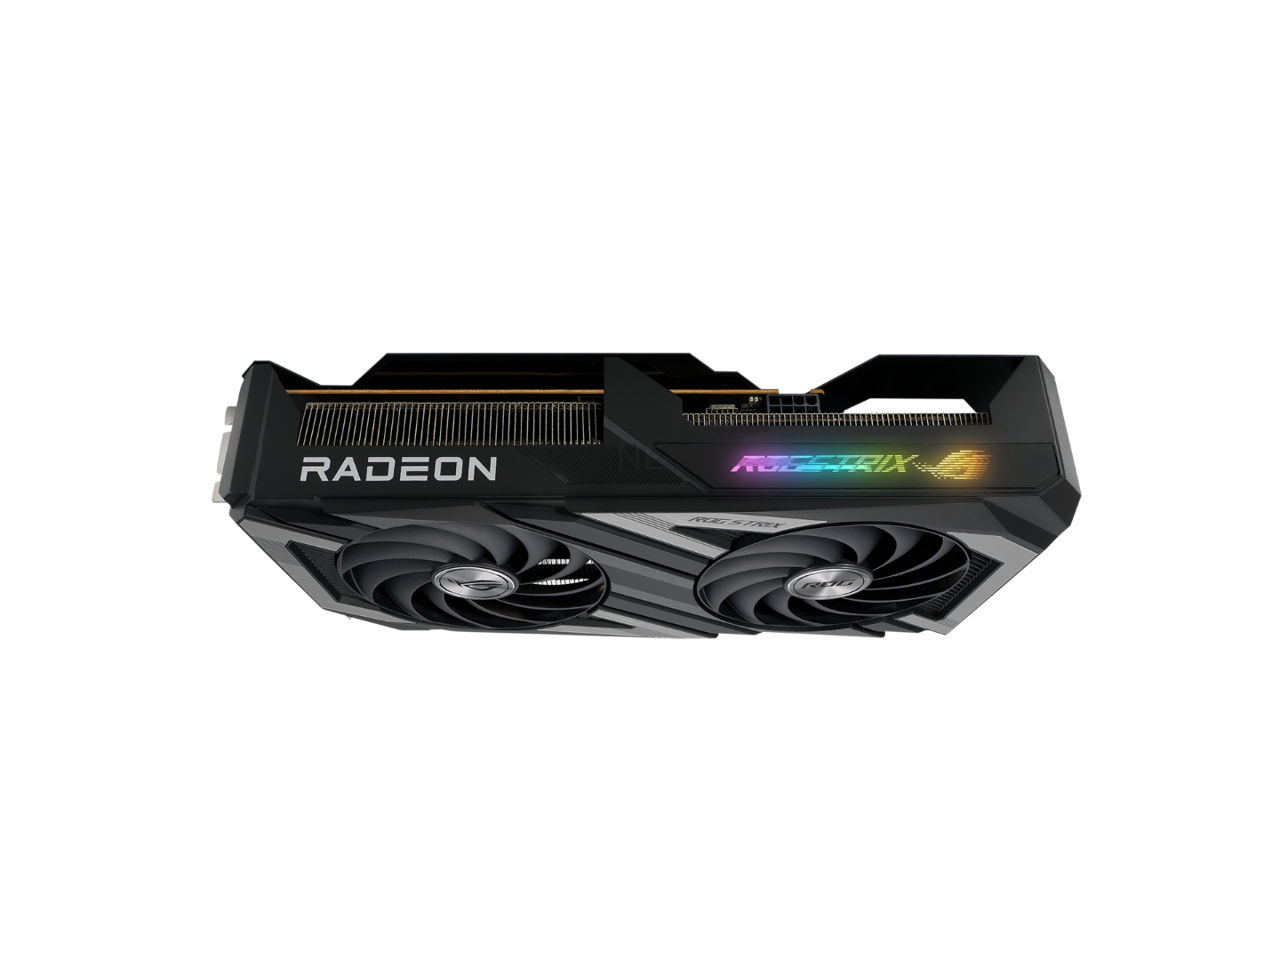 ASUS ROG Strix Radeon RX 7600 OC Edition 8GB GDDR6 Graphics Card (PCIe 4.0, 8GB GDDR6, HDMI 2.1, DisplayPort 1.4a, Axial-tech Fans, Dual BIOS, GPU Tweak III) ROG-STRIX-RX7600-O8G-GAMING